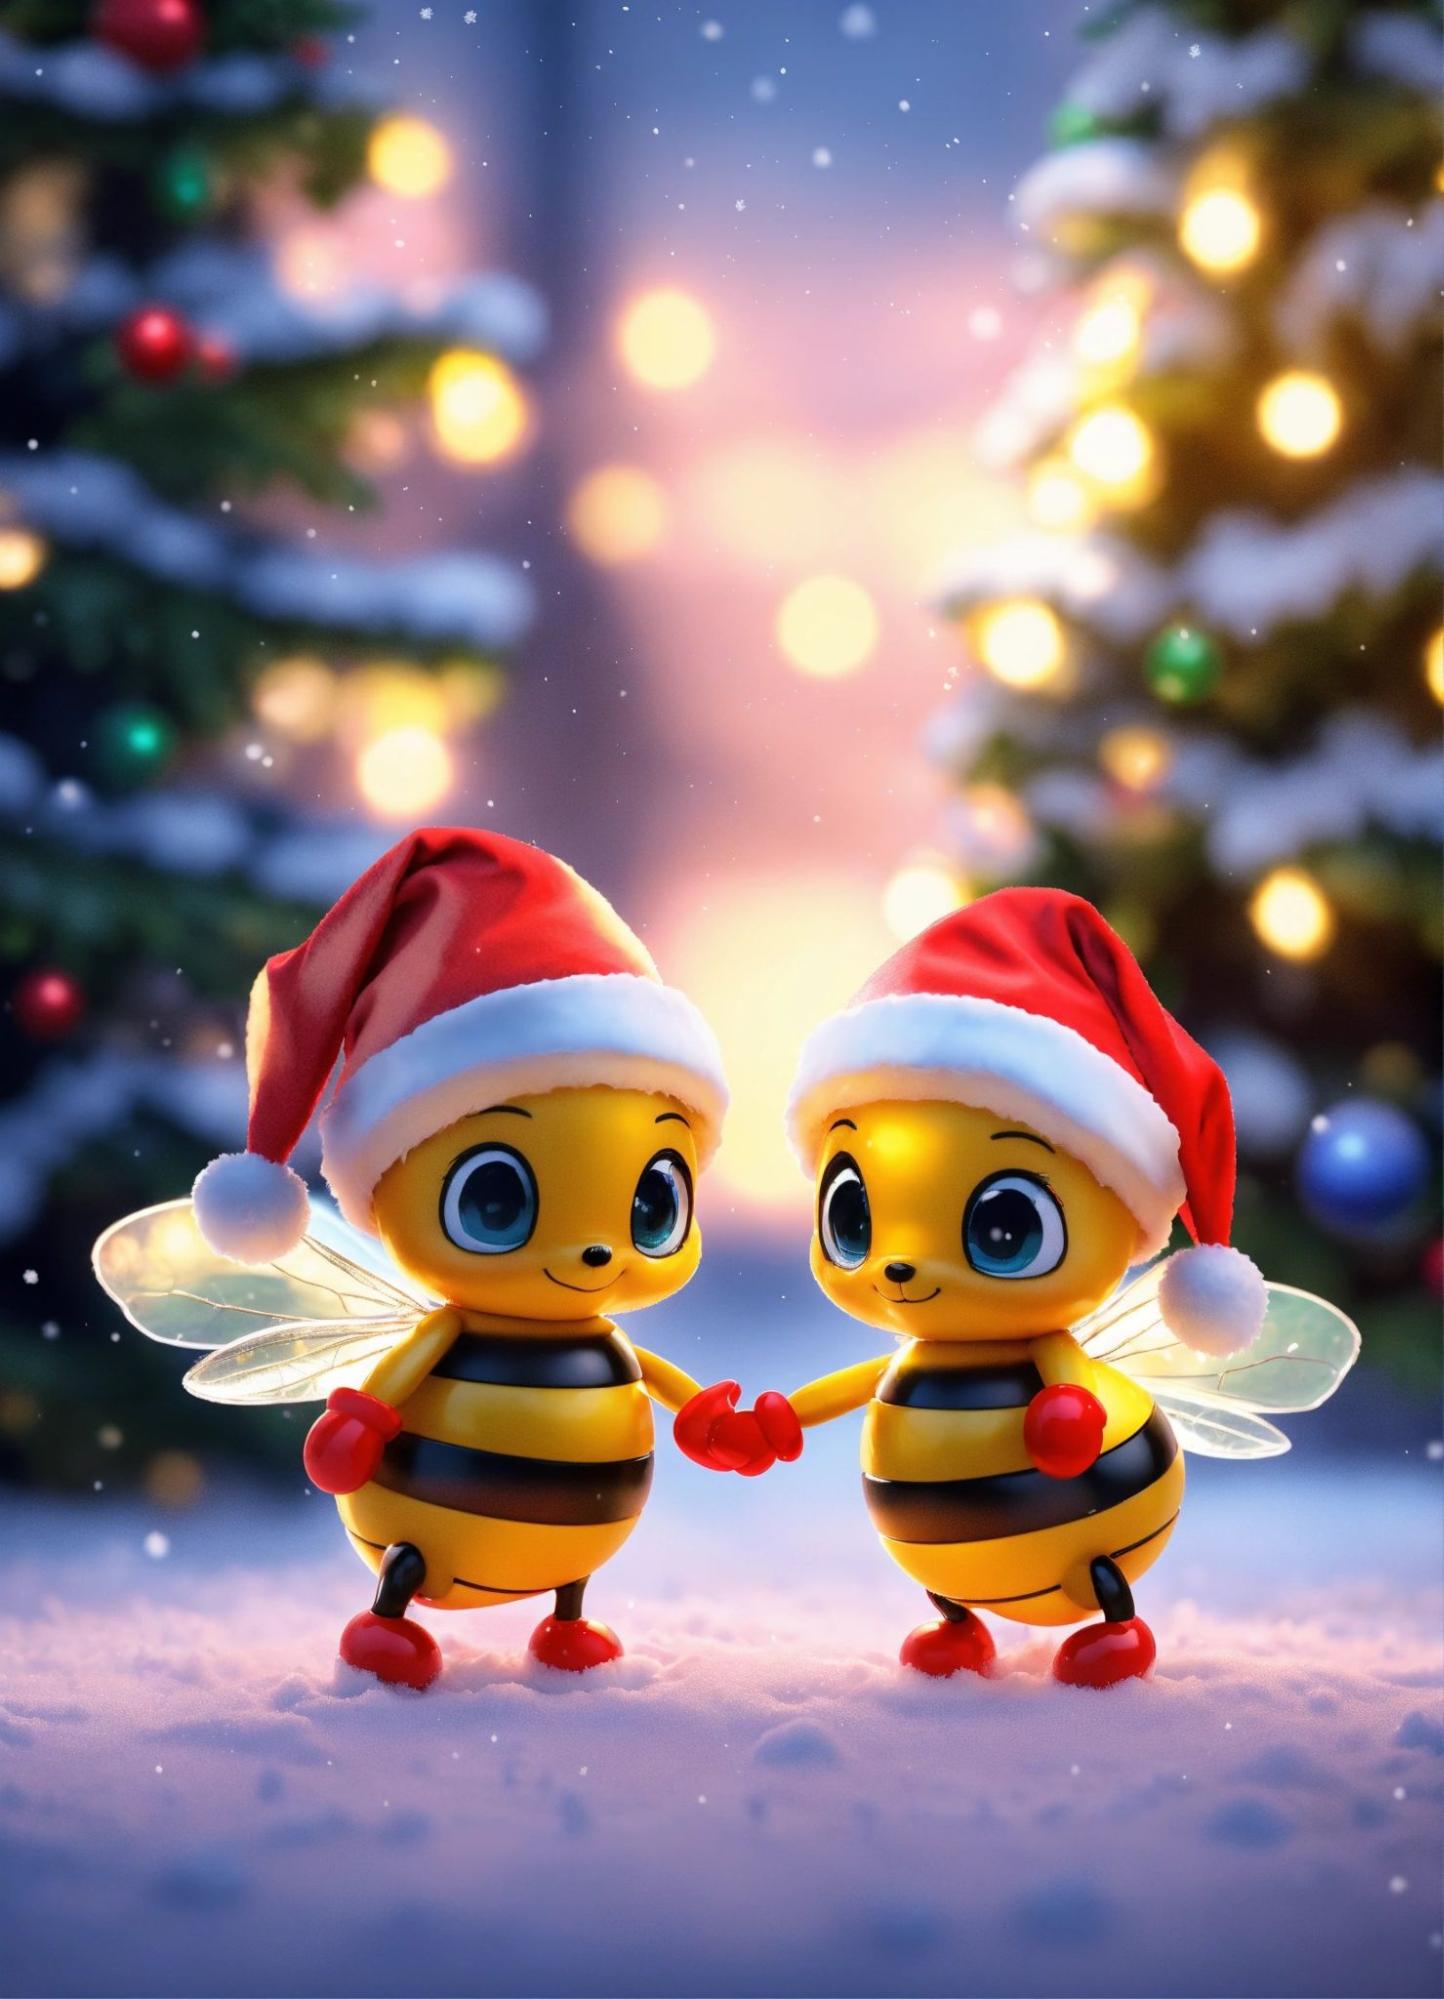 Holiday chibi bees